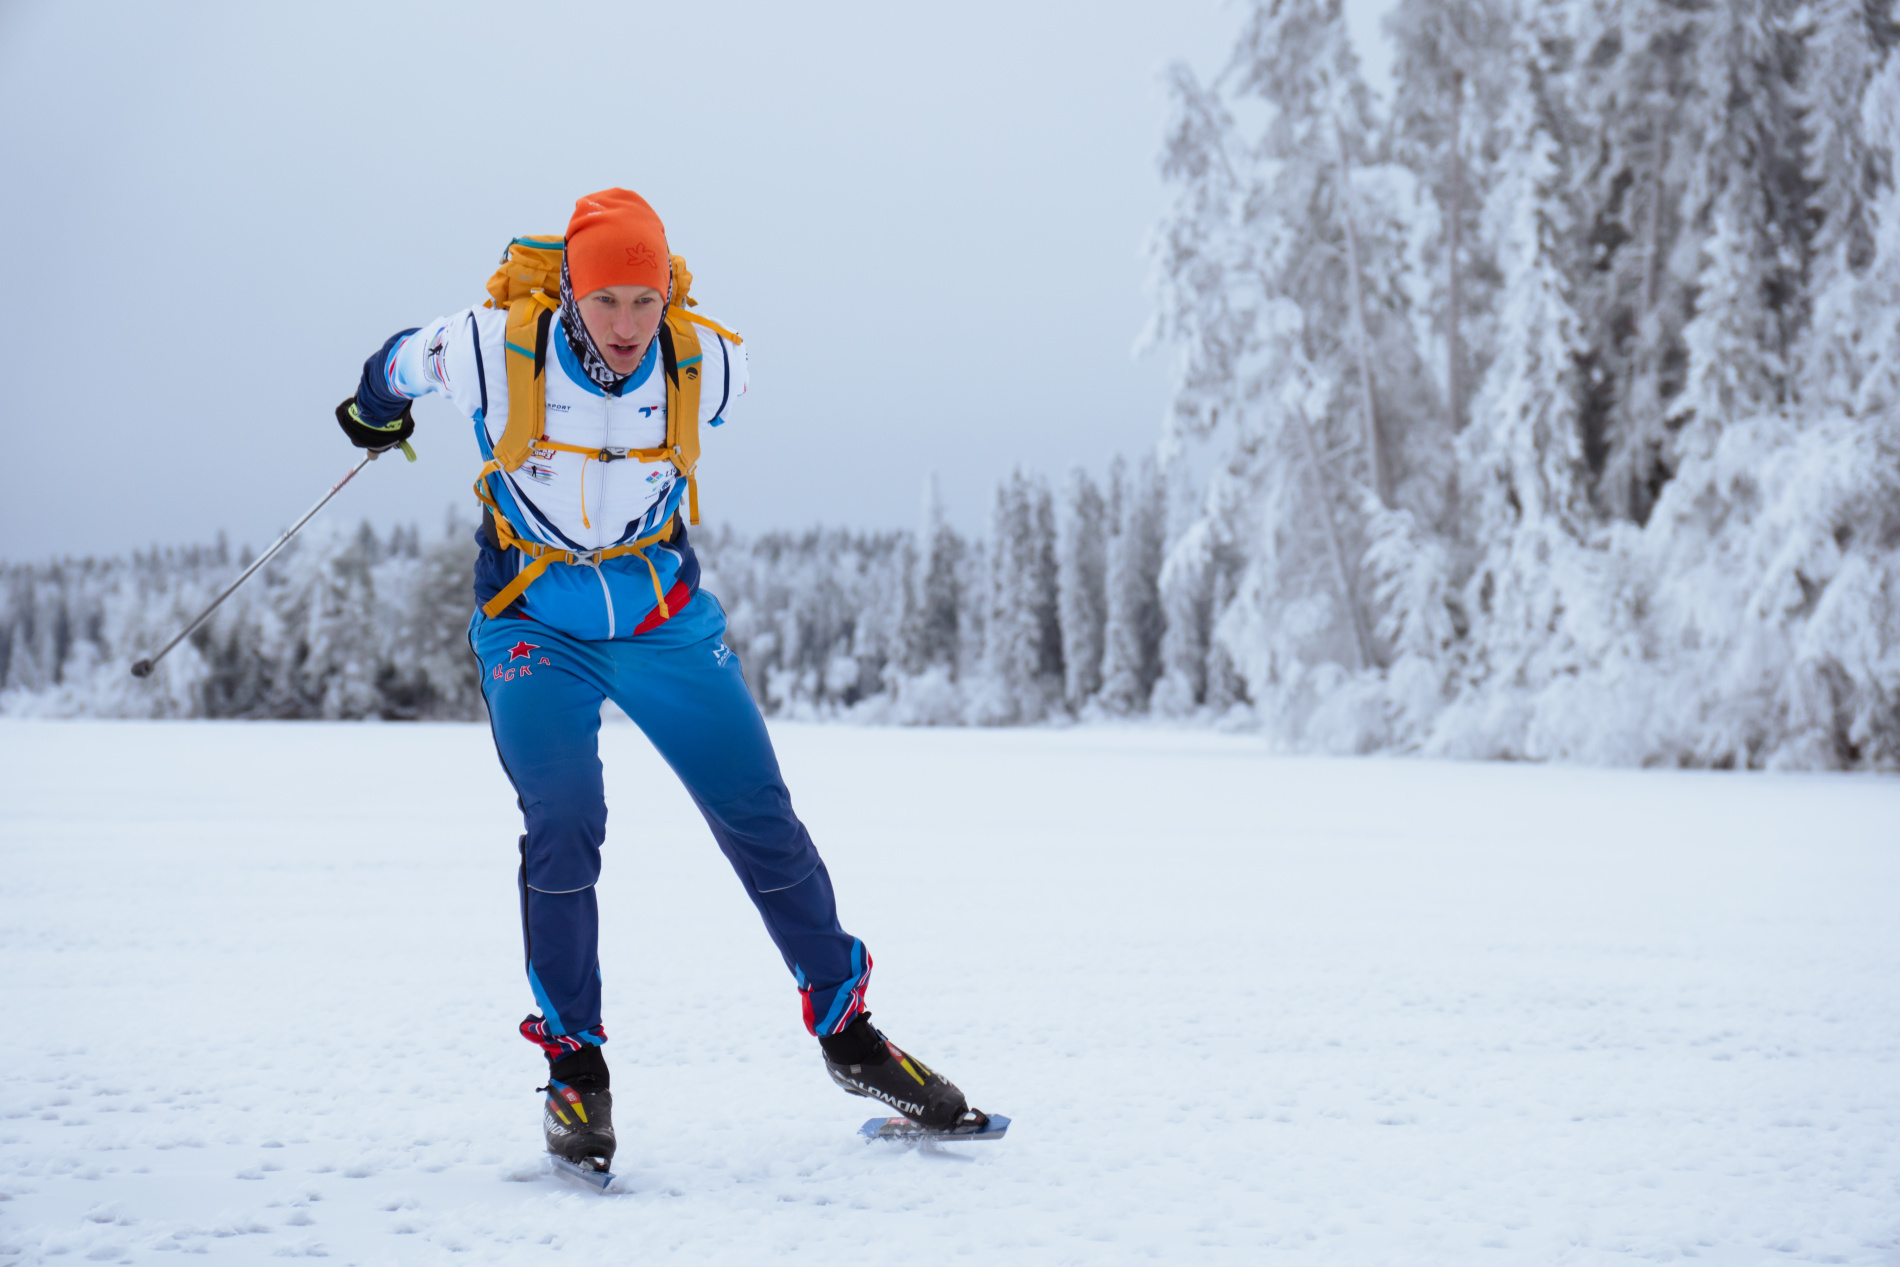 Фото: Скорость удается развивать куда выше, чем на лыжах. 35-40 км/ч на равнине без особых проблем. Кайф для тех, кто уверен в своей лыжной технике.